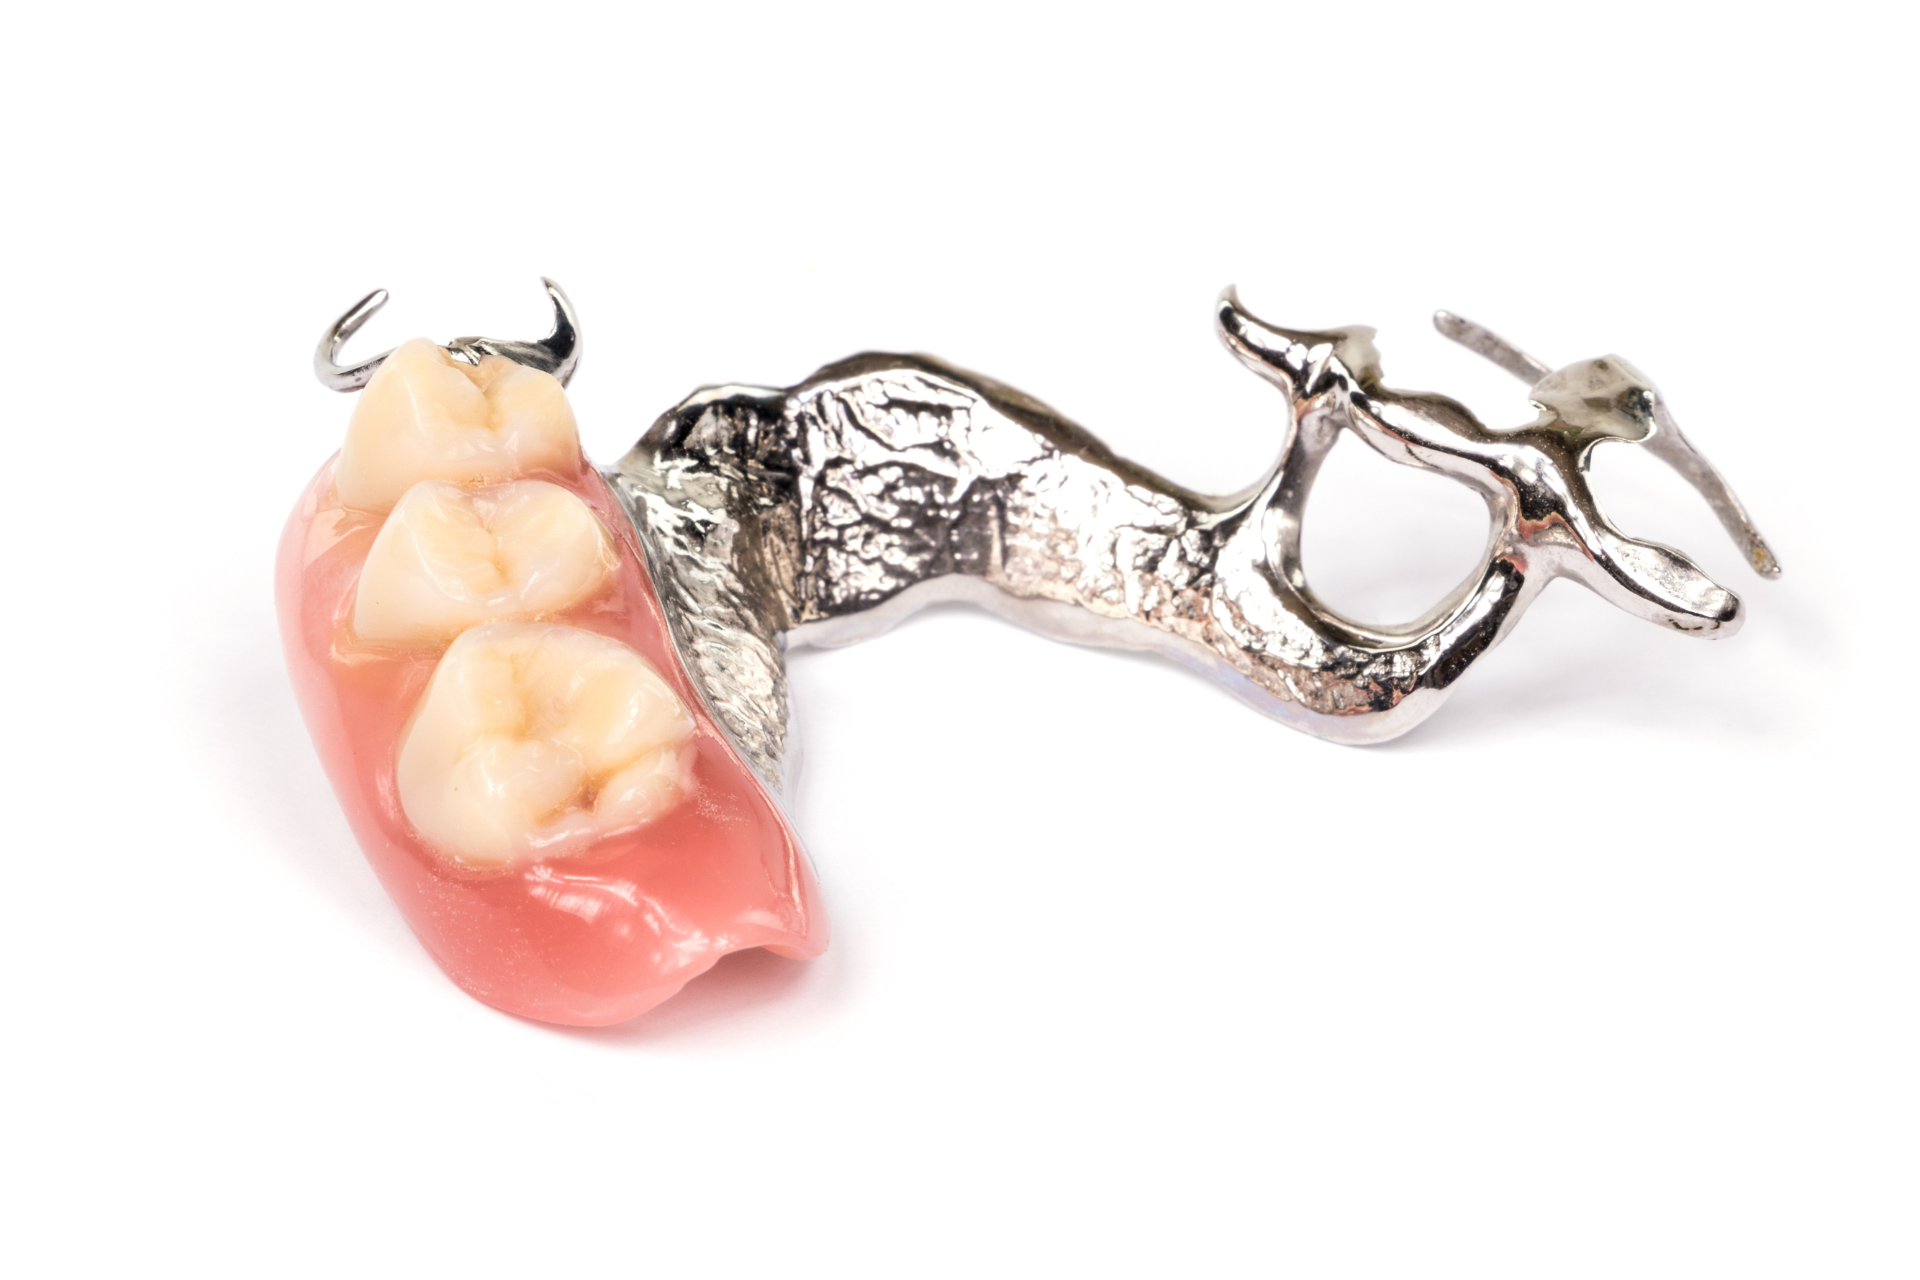 Image of sample for dental implants